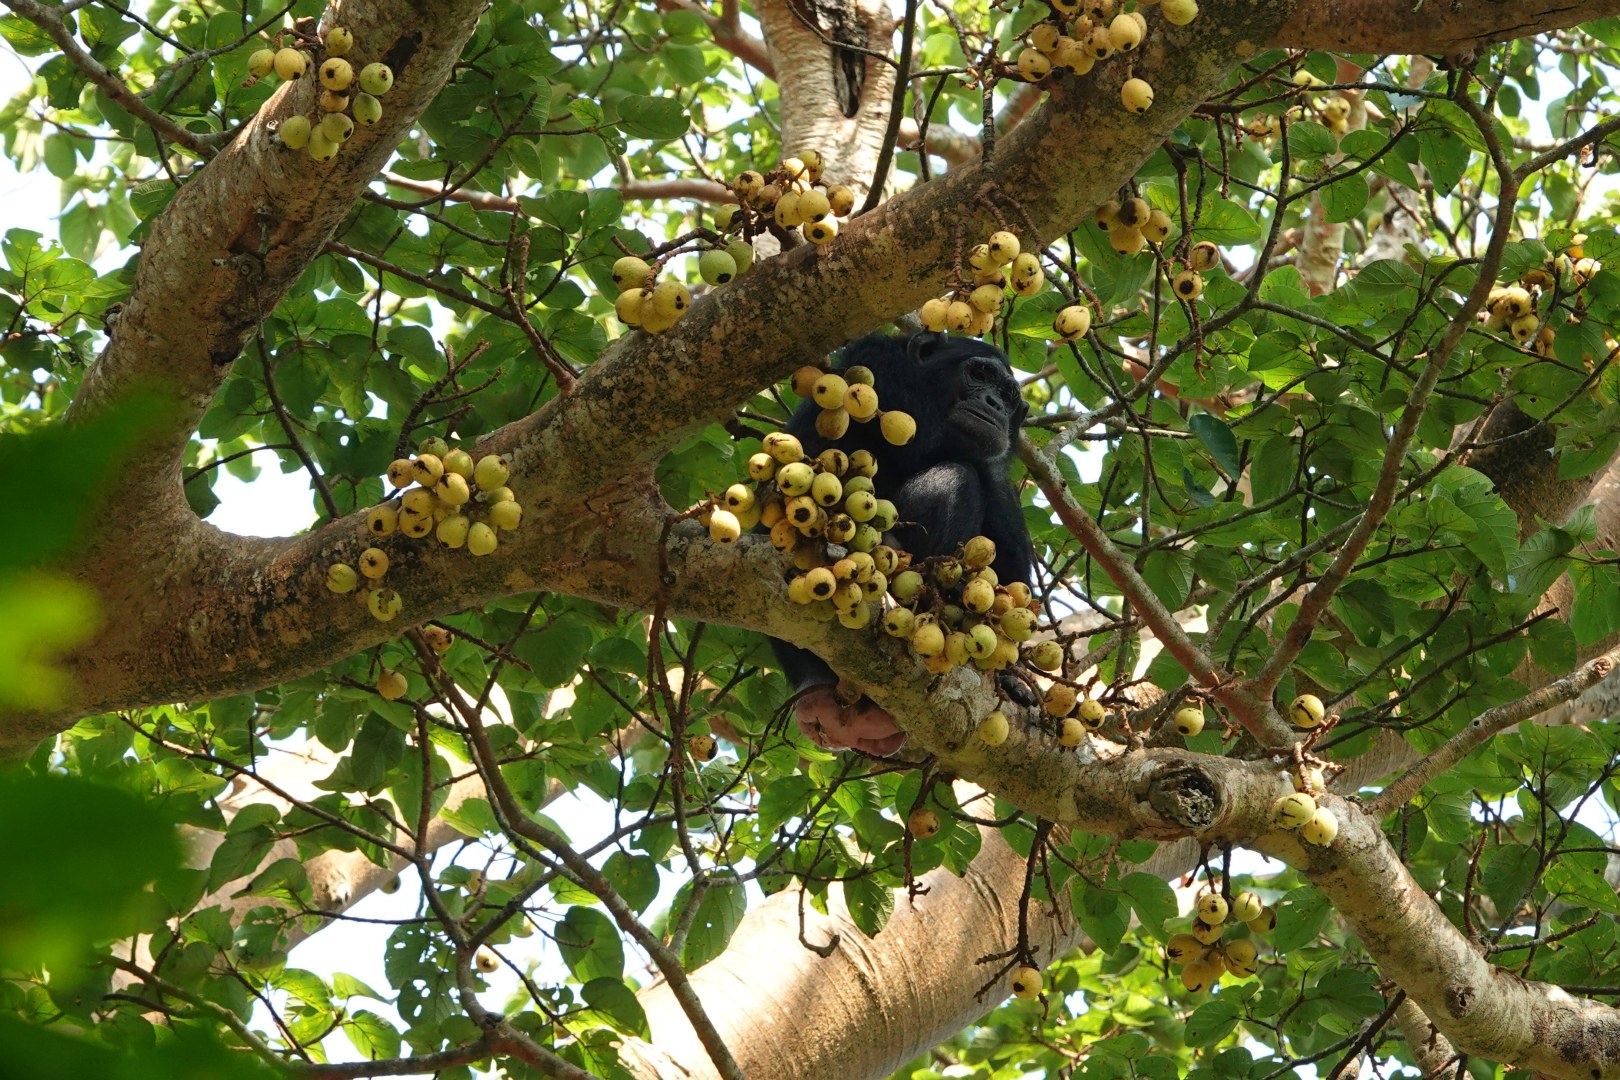 Chimpanzee, Kibale National Park